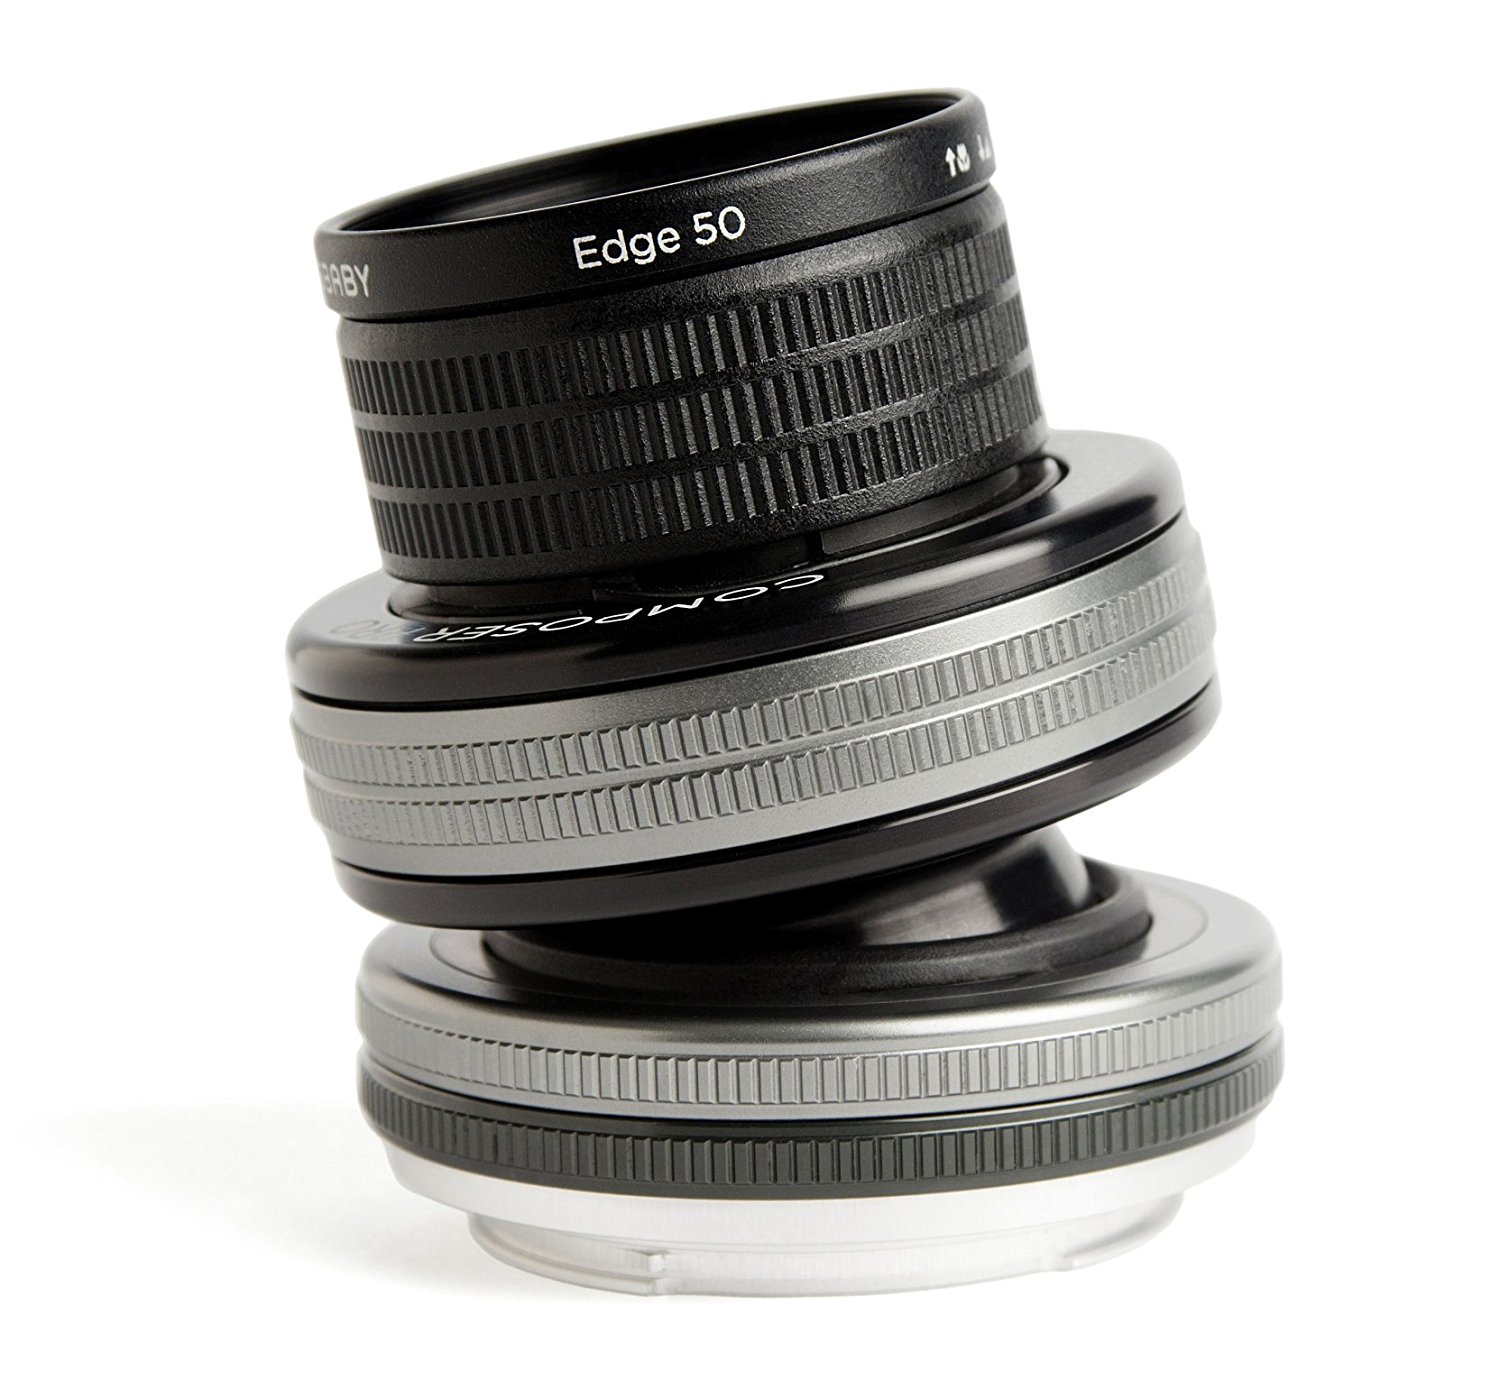 Lensbaby, Inc 带有适用于佳能EF的Edge 50光学镜片的Lensbaby Composer Pro II